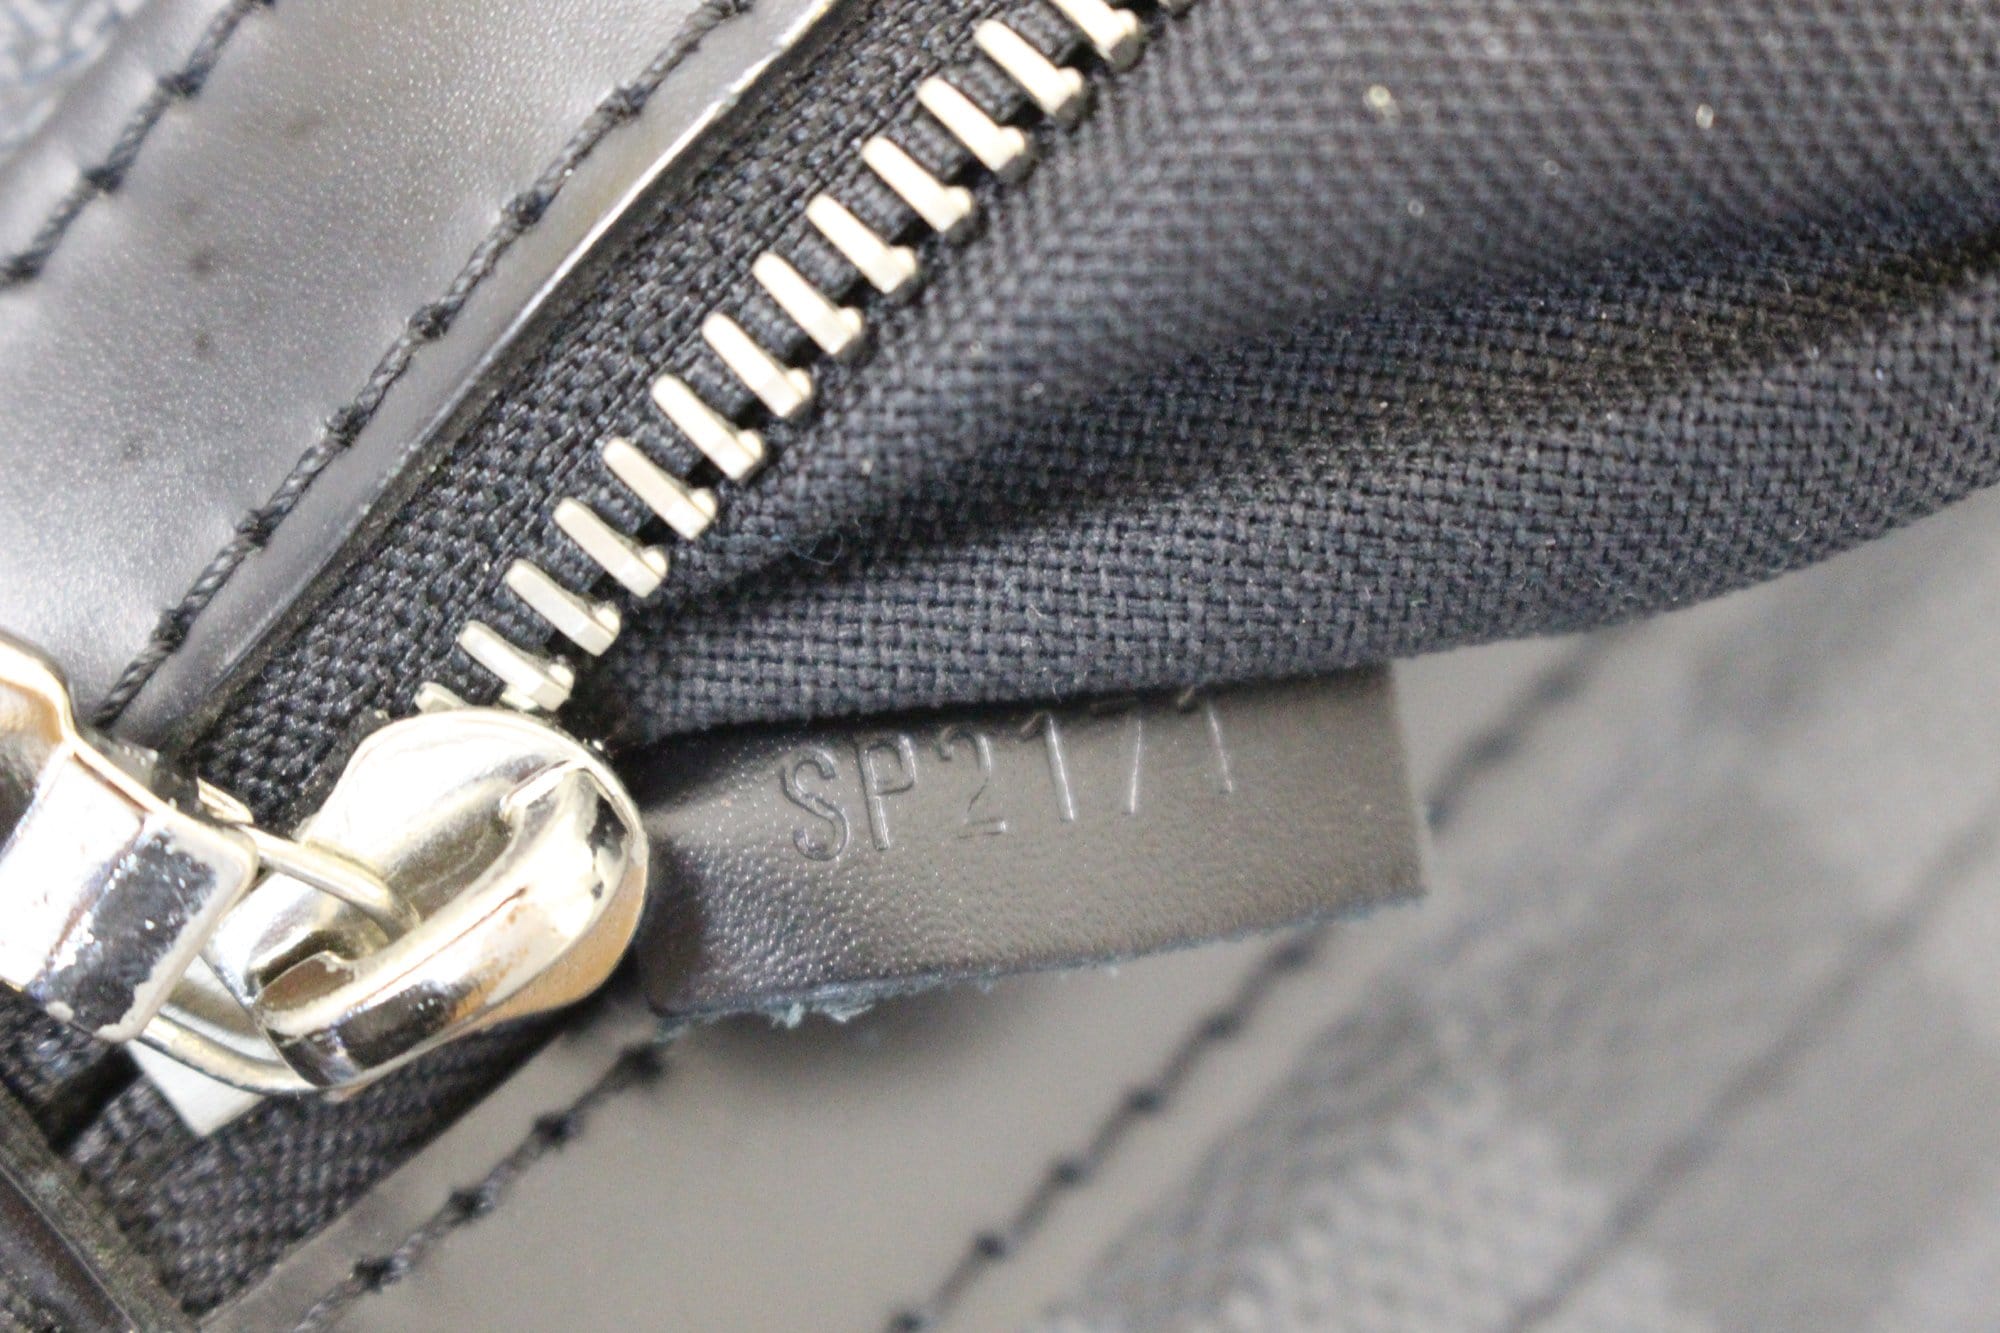 Louis Vuitton, Bags, Lv Daniel Messenger Bag Damier Graphite Mm